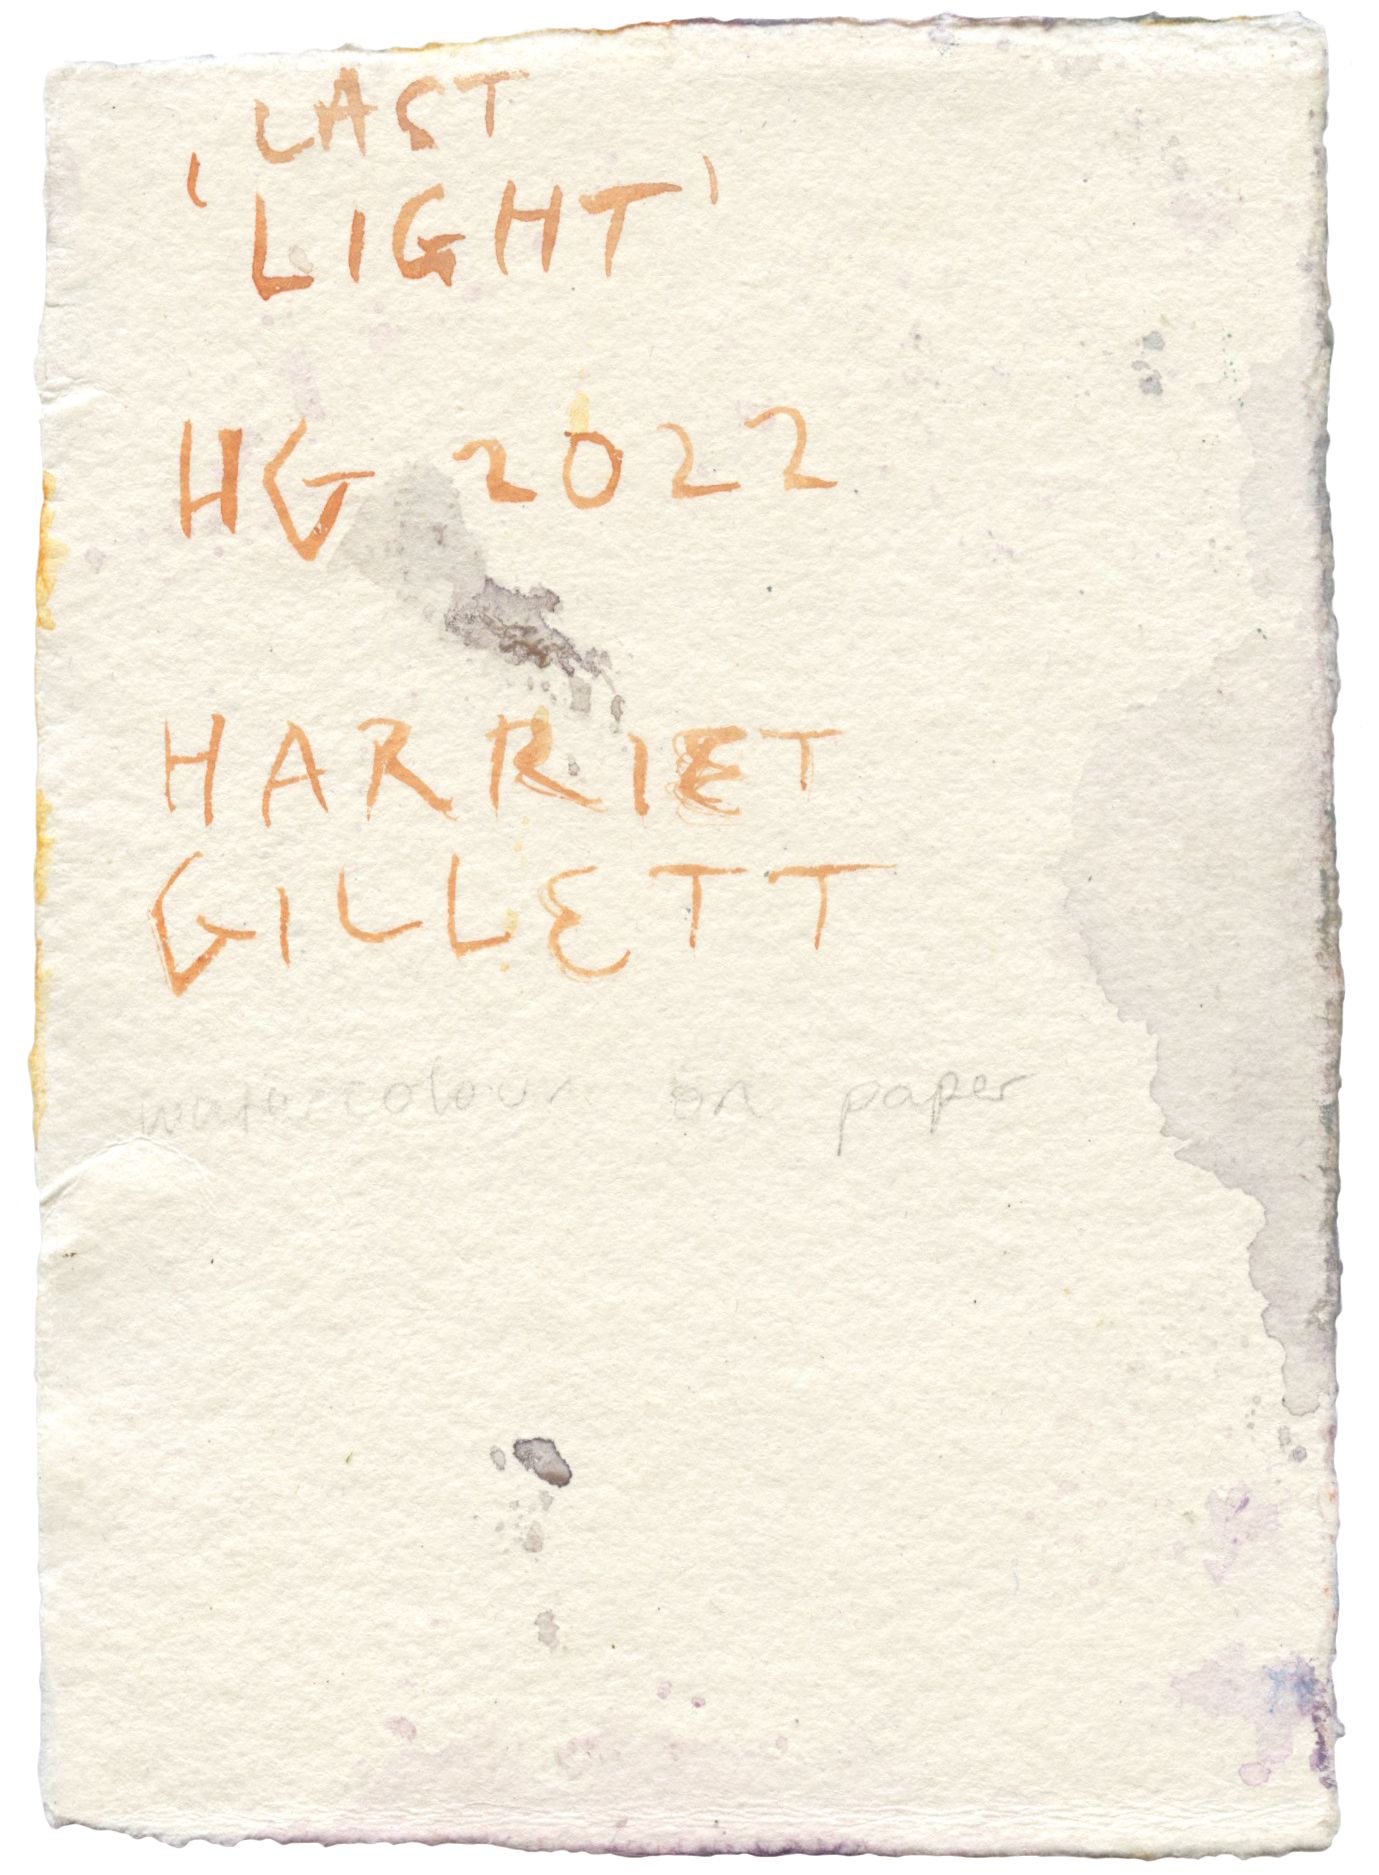 30. Harriet Gillett - Last Light - BACK